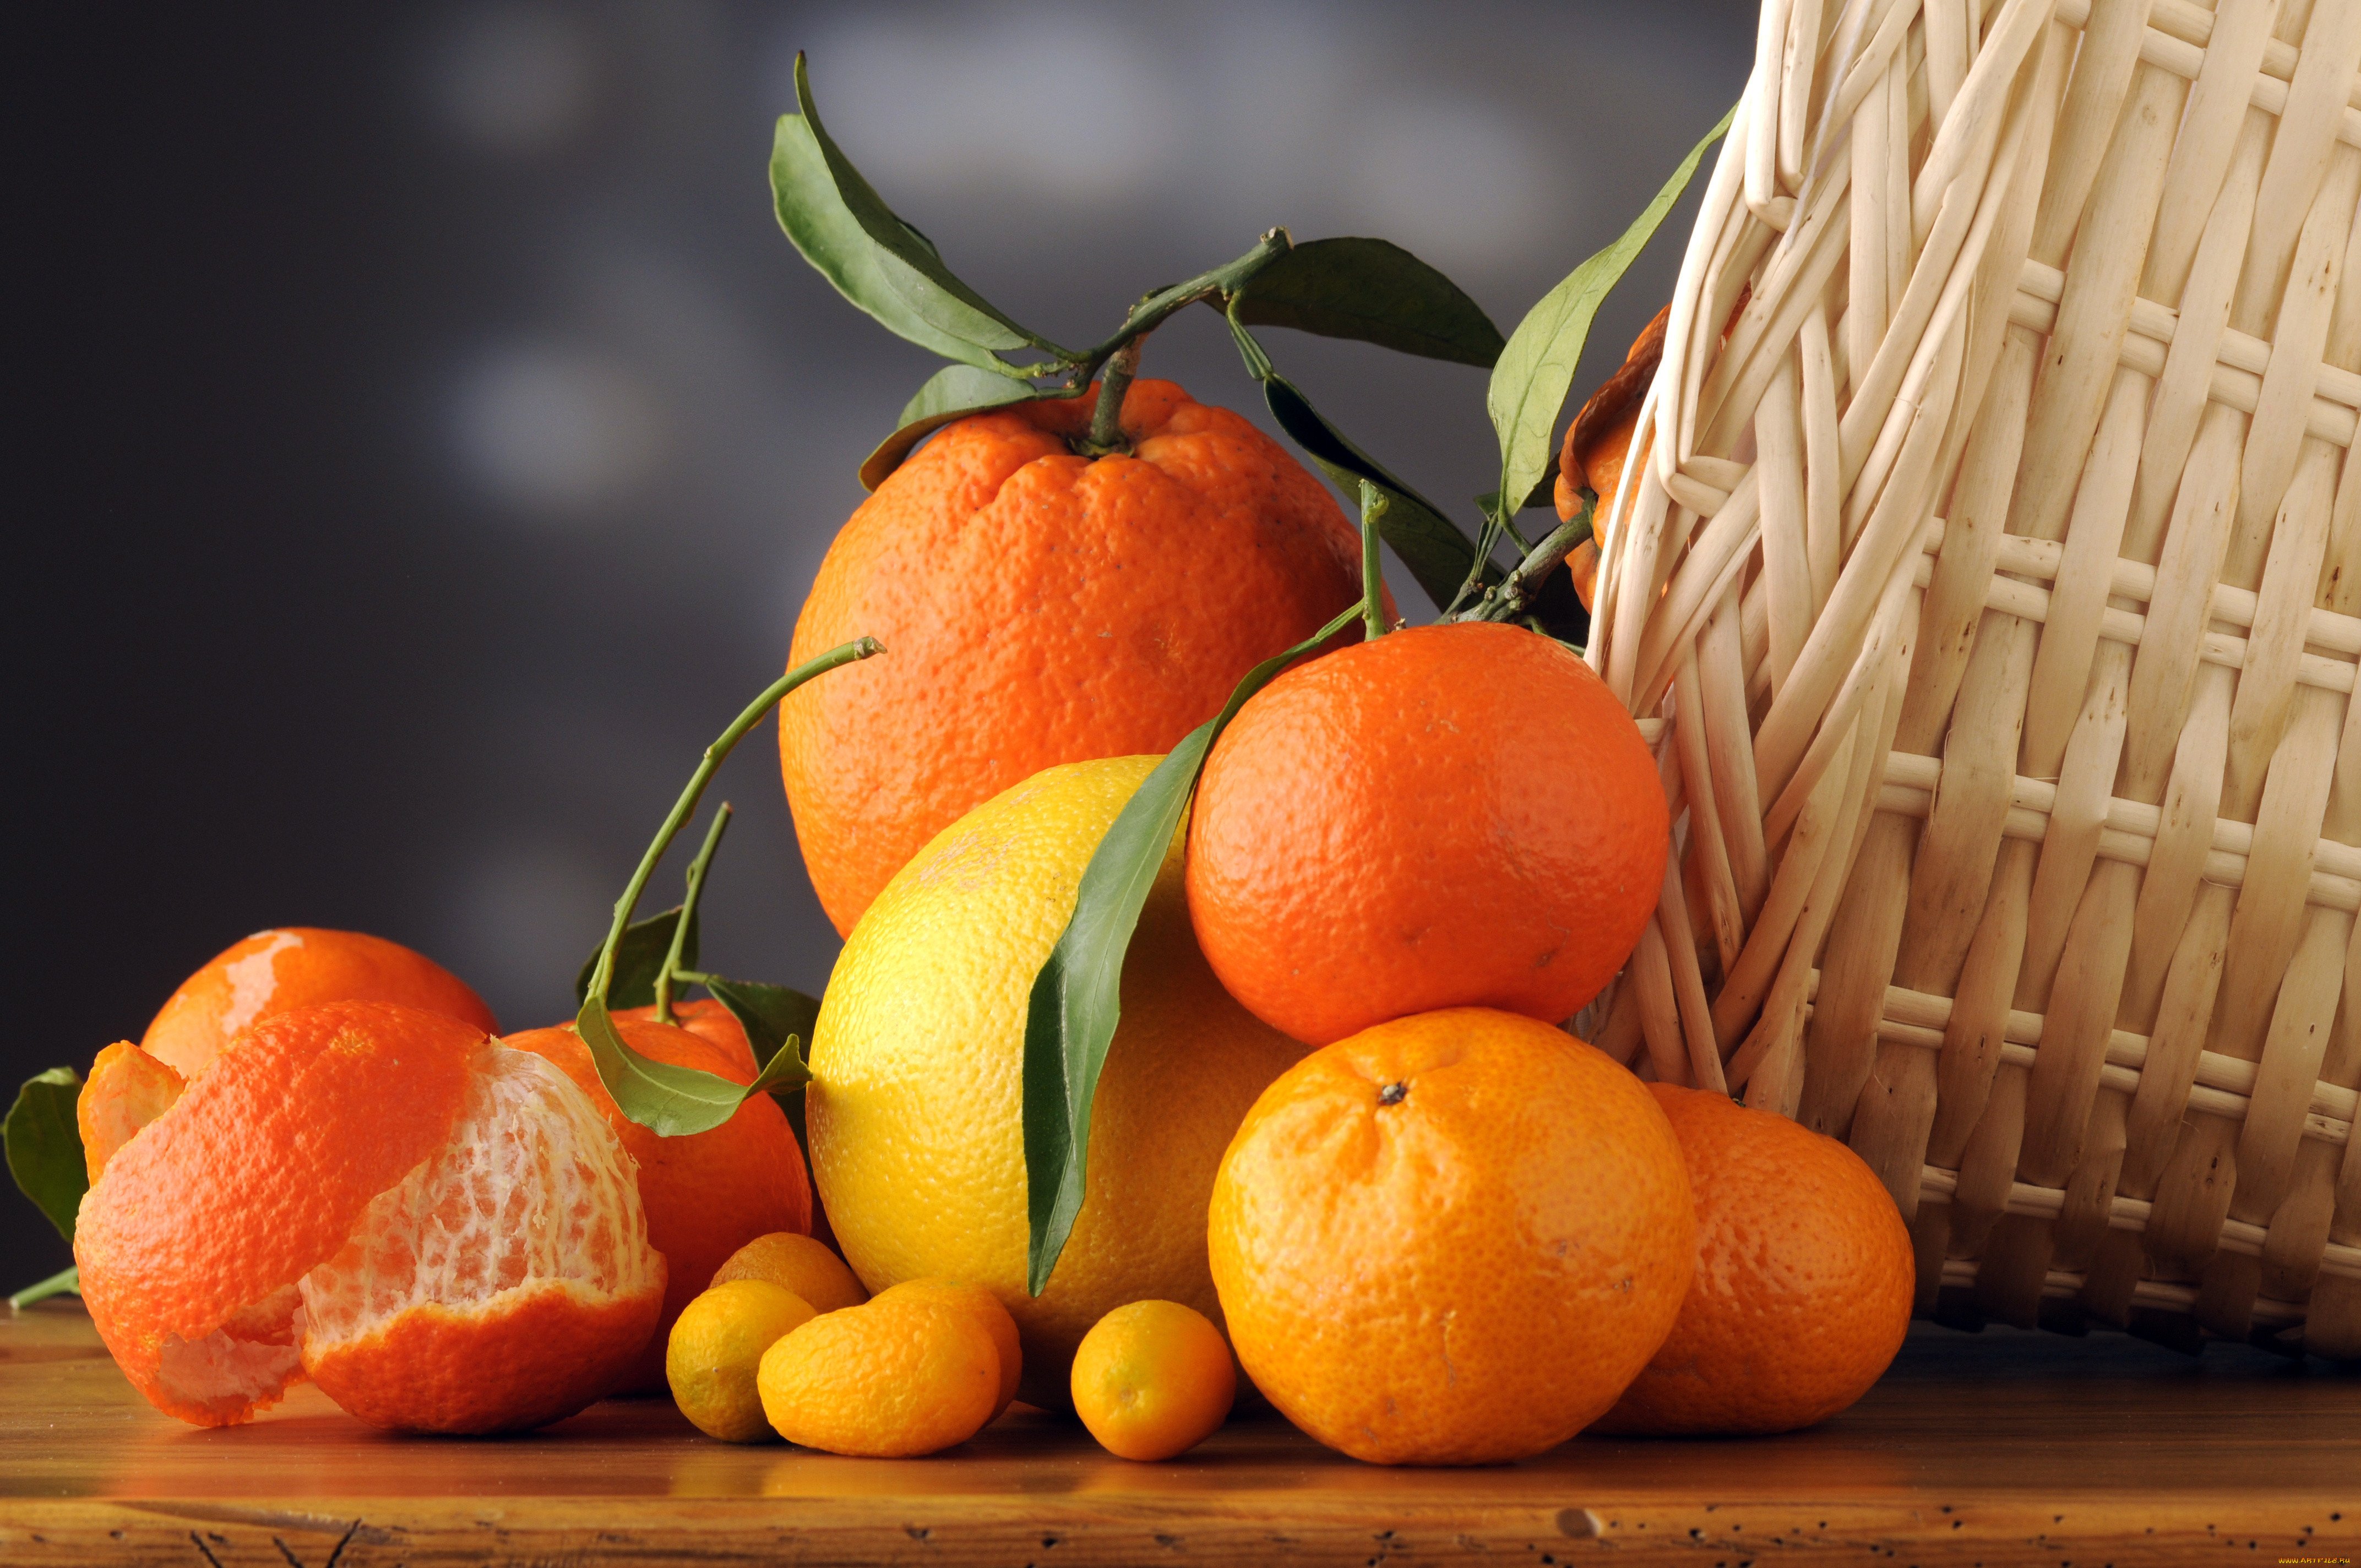 Реклама мандаринов. Апельсин Навелин. Цитрус мандарин +апельсин. Мандарин померанец. Красивый апельсин.